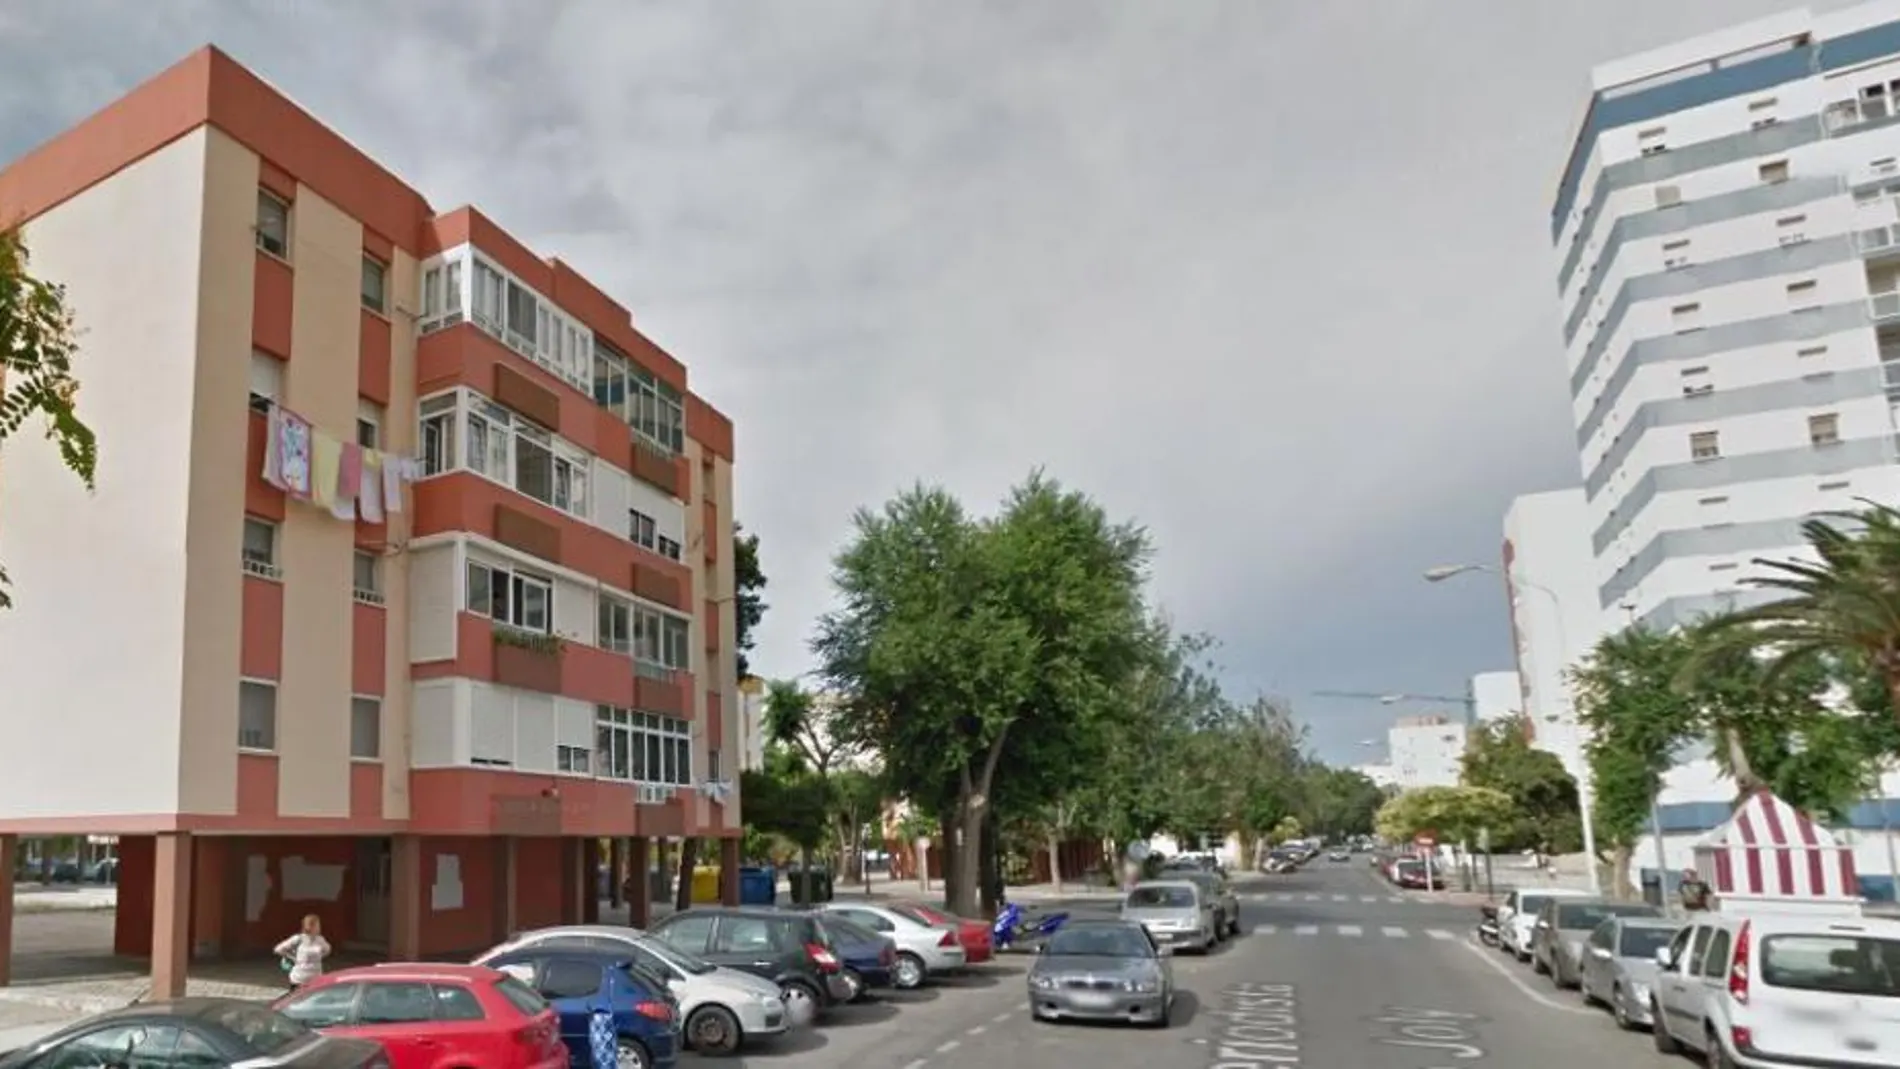 Los hechos se produjeron en el barrio de Segunda Aguada de Cádiz